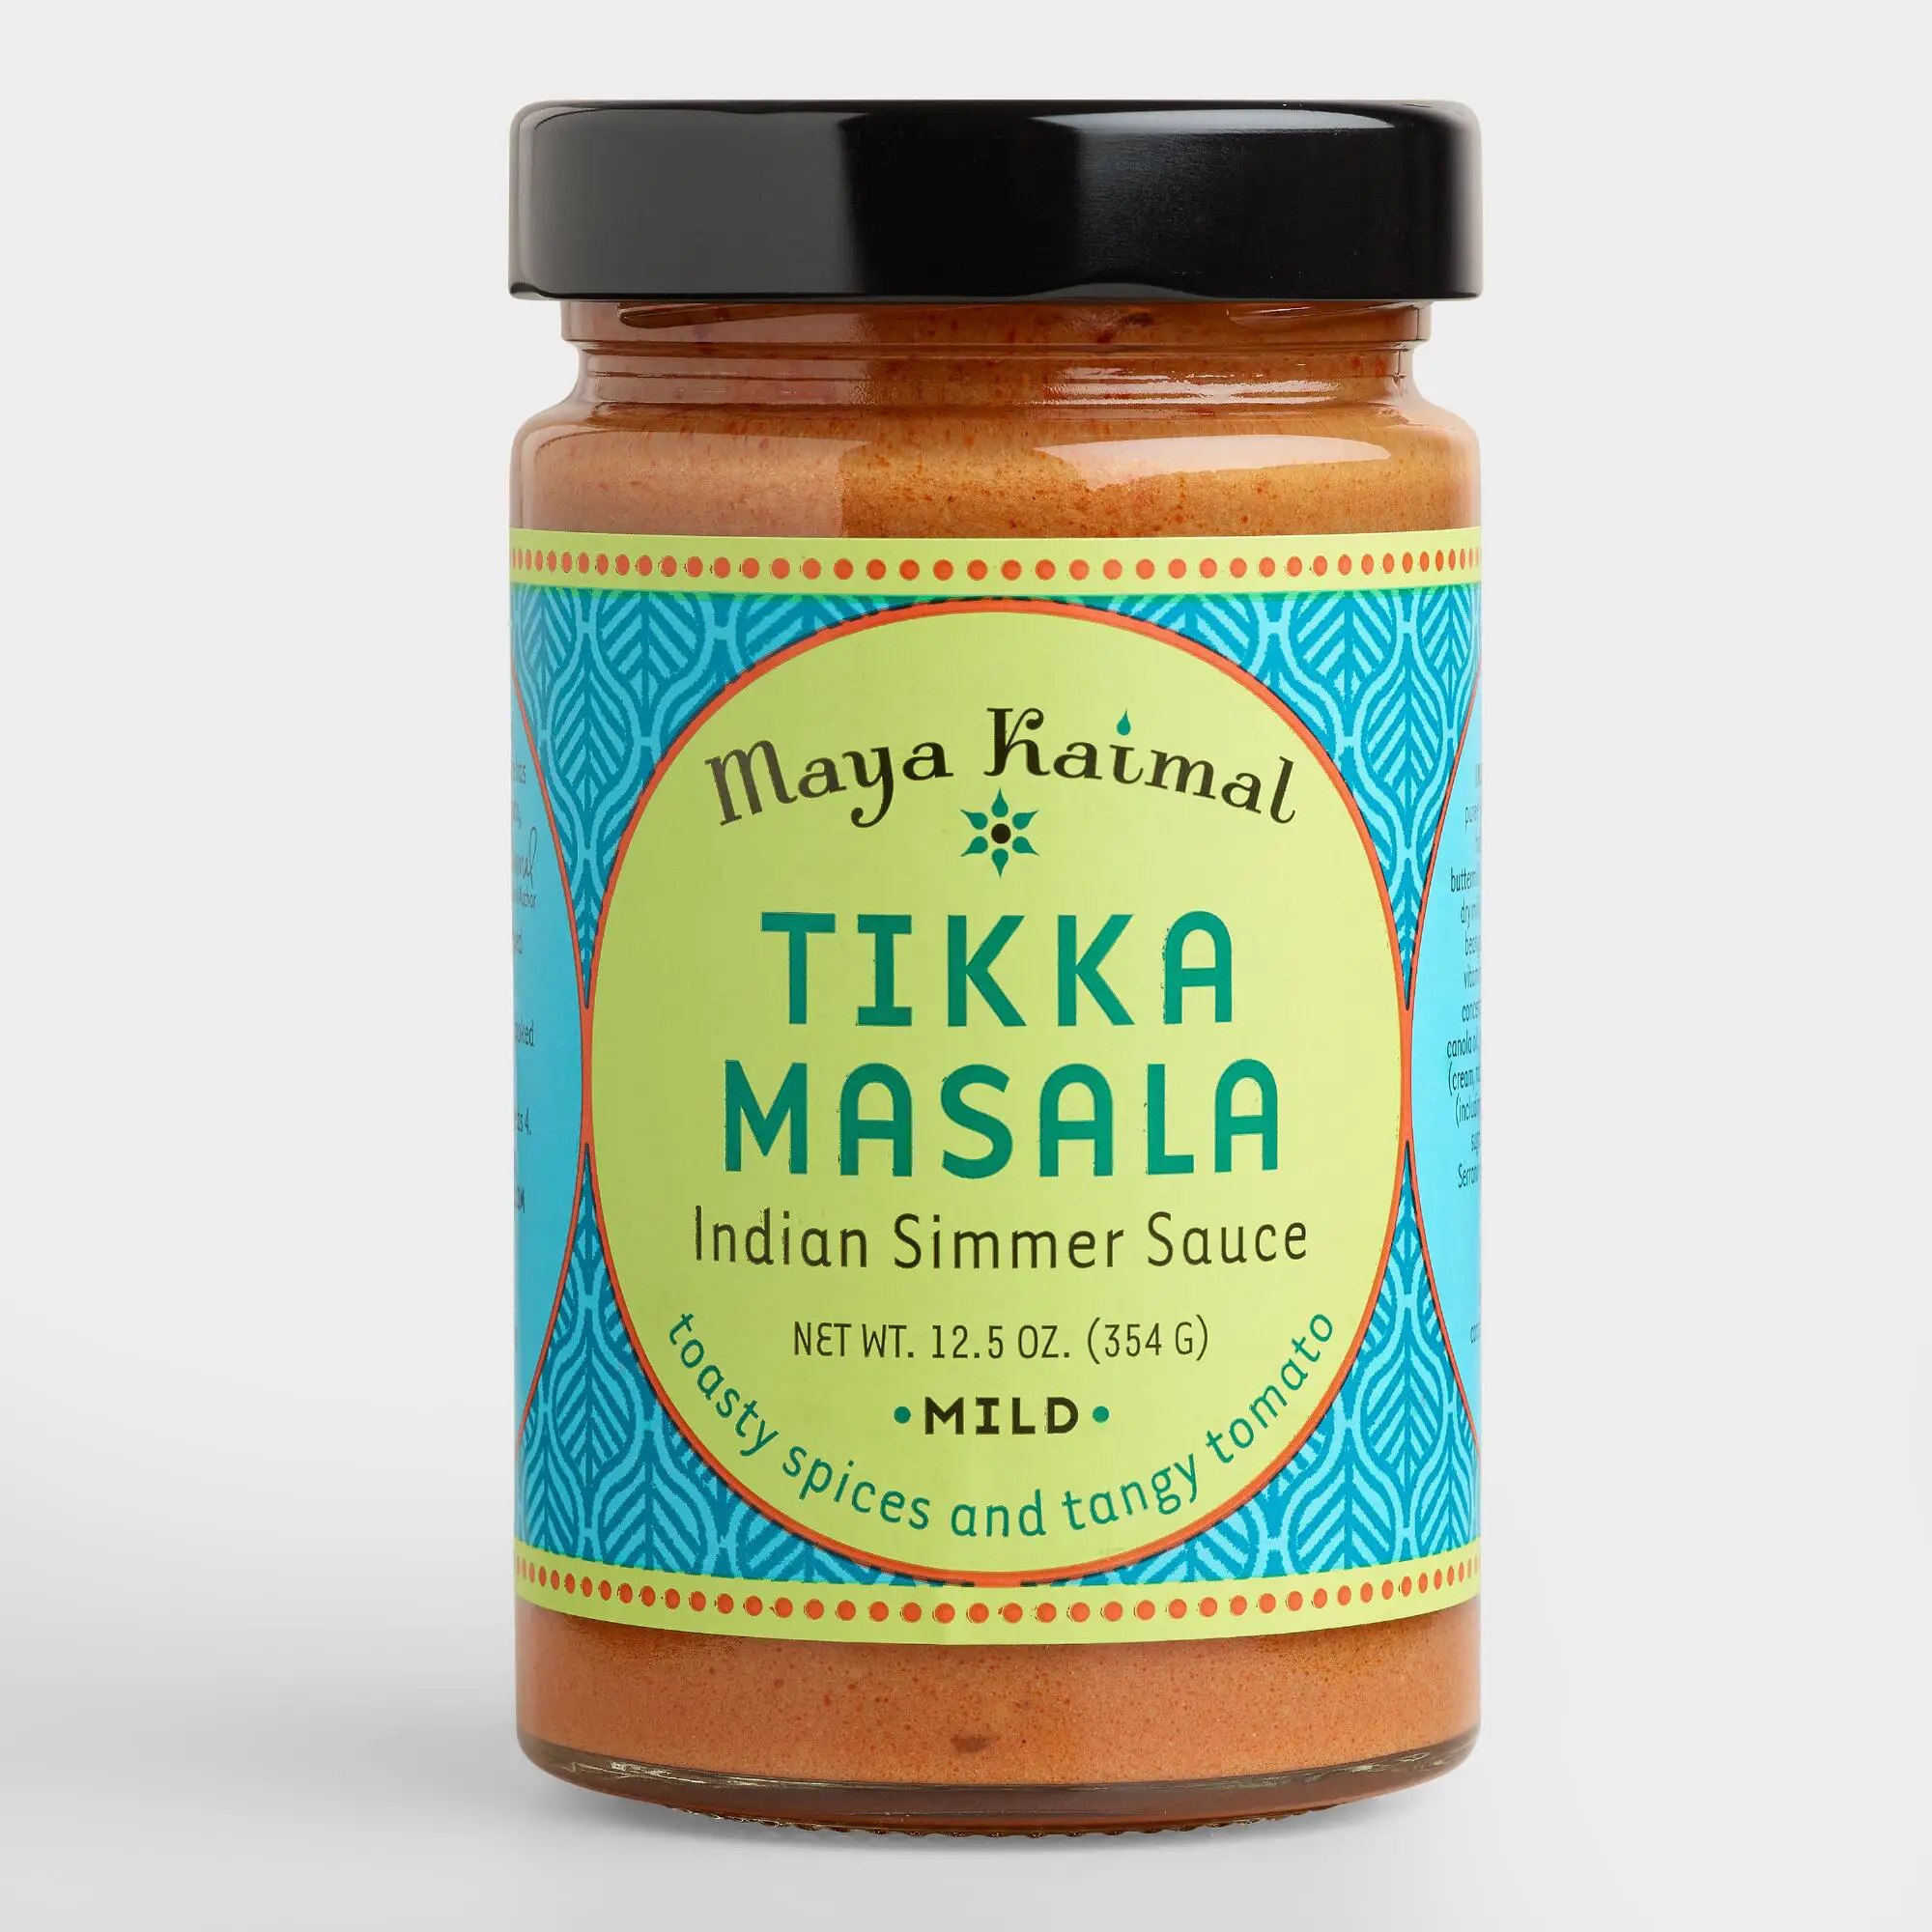 Maya Kaimal Tikka Masala Indian Simmer Sauce, Set of 6